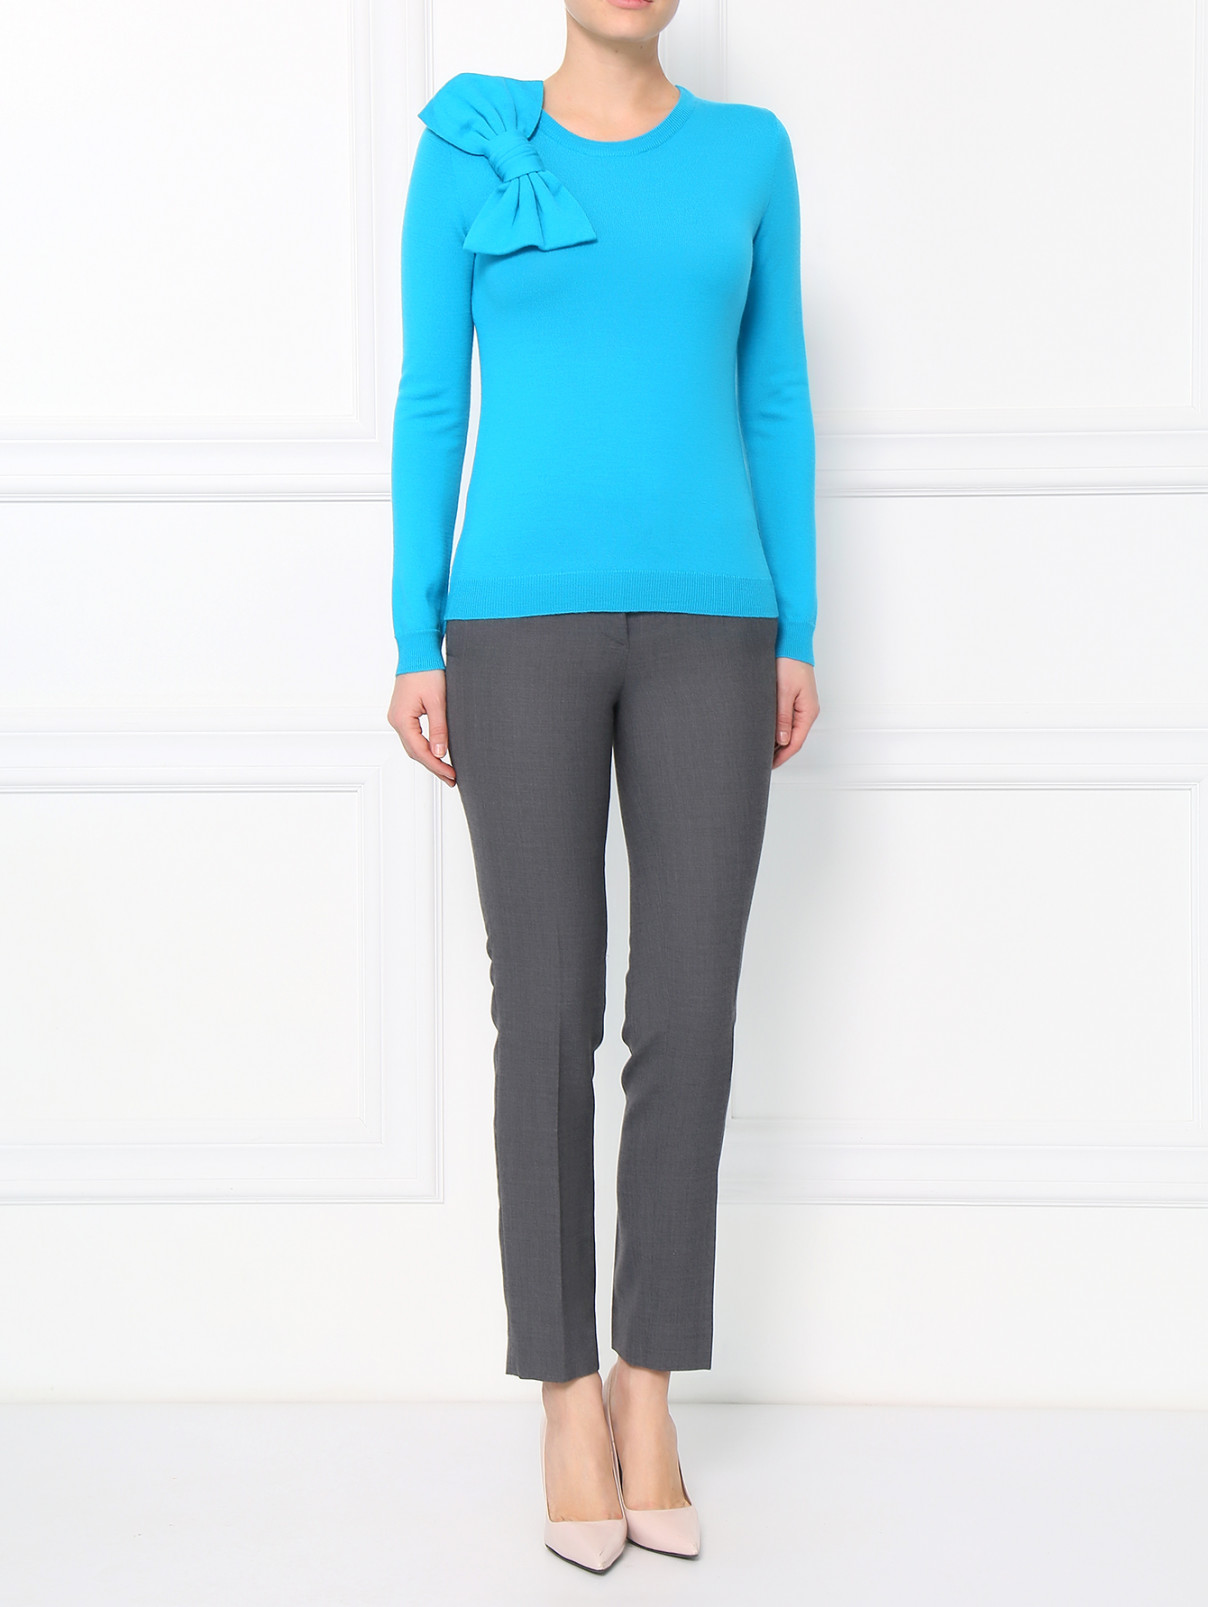 Зауженные брюки из шерсти Moschino Boutique  –  Модель Общий вид  – Цвет:  Серый